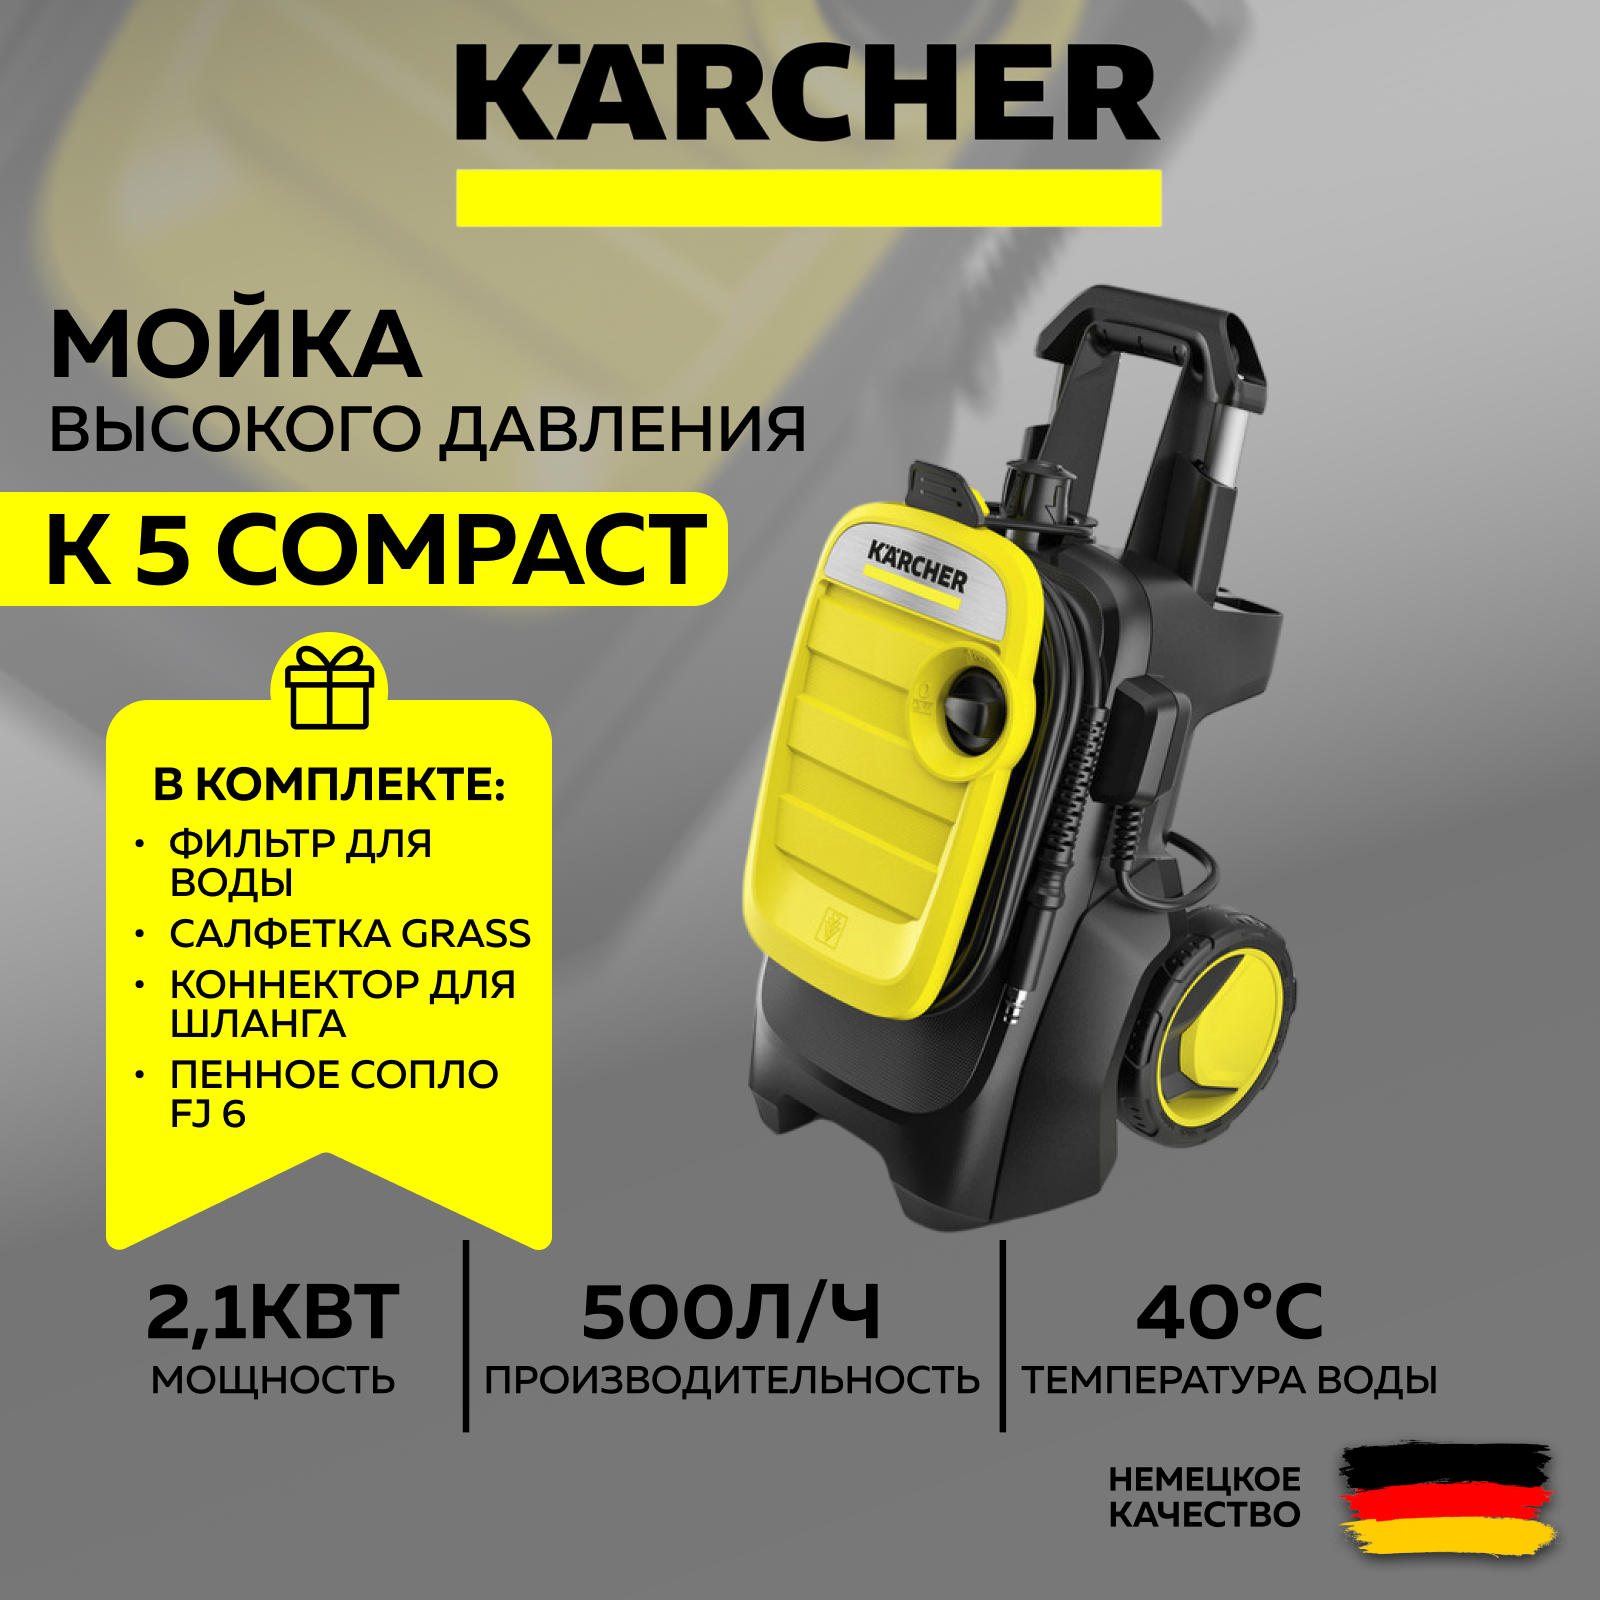 Мойка высокого давления KARCHER K 5 Compact+Фильтр воды+Пеногенератор+Салфетка+Коннектор